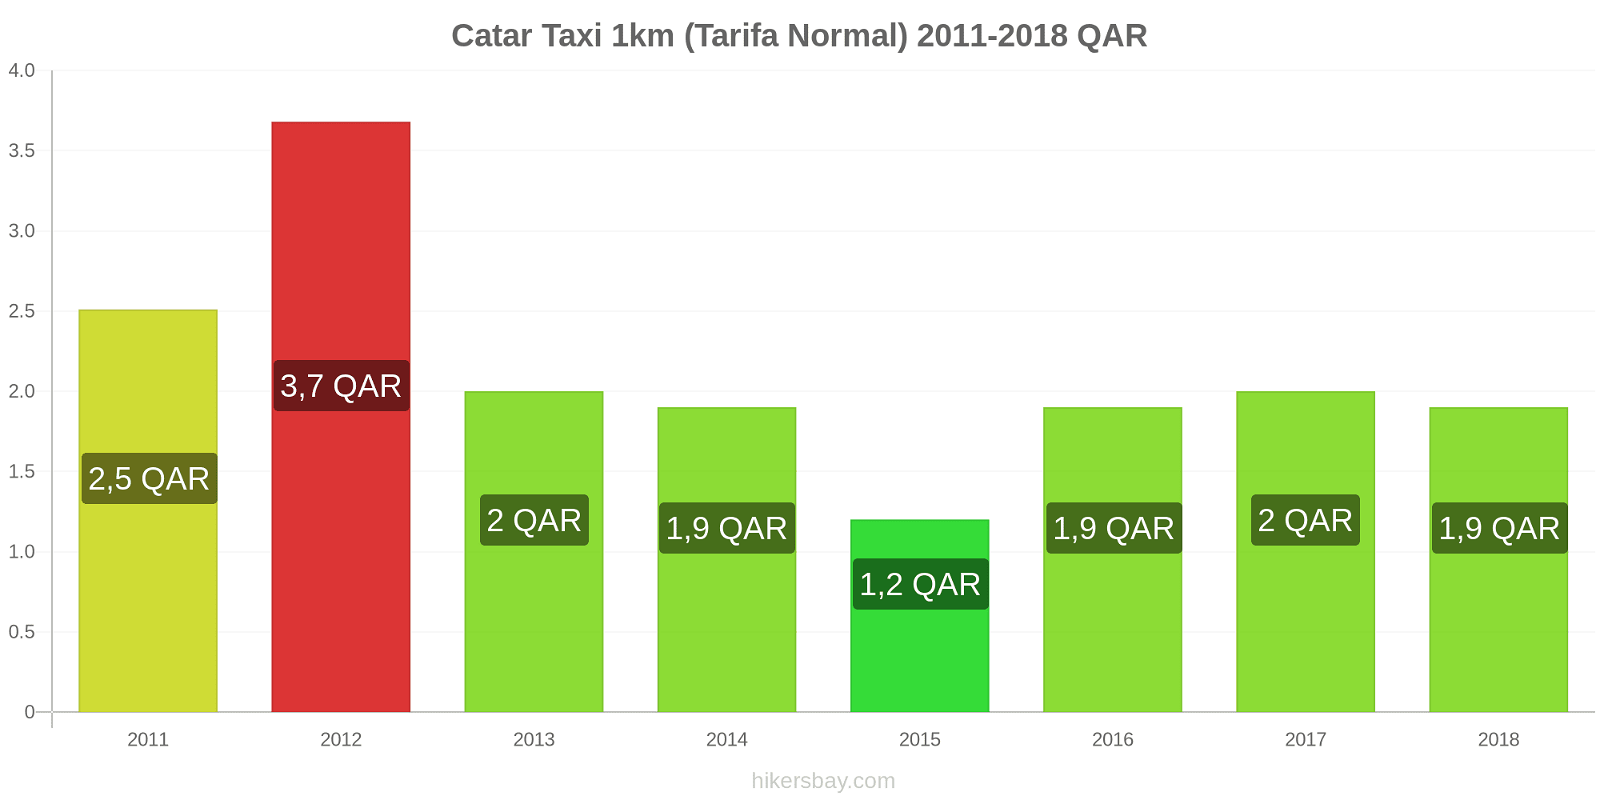 Catar cambios de precios Taxi 1km (tarifa normal) hikersbay.com